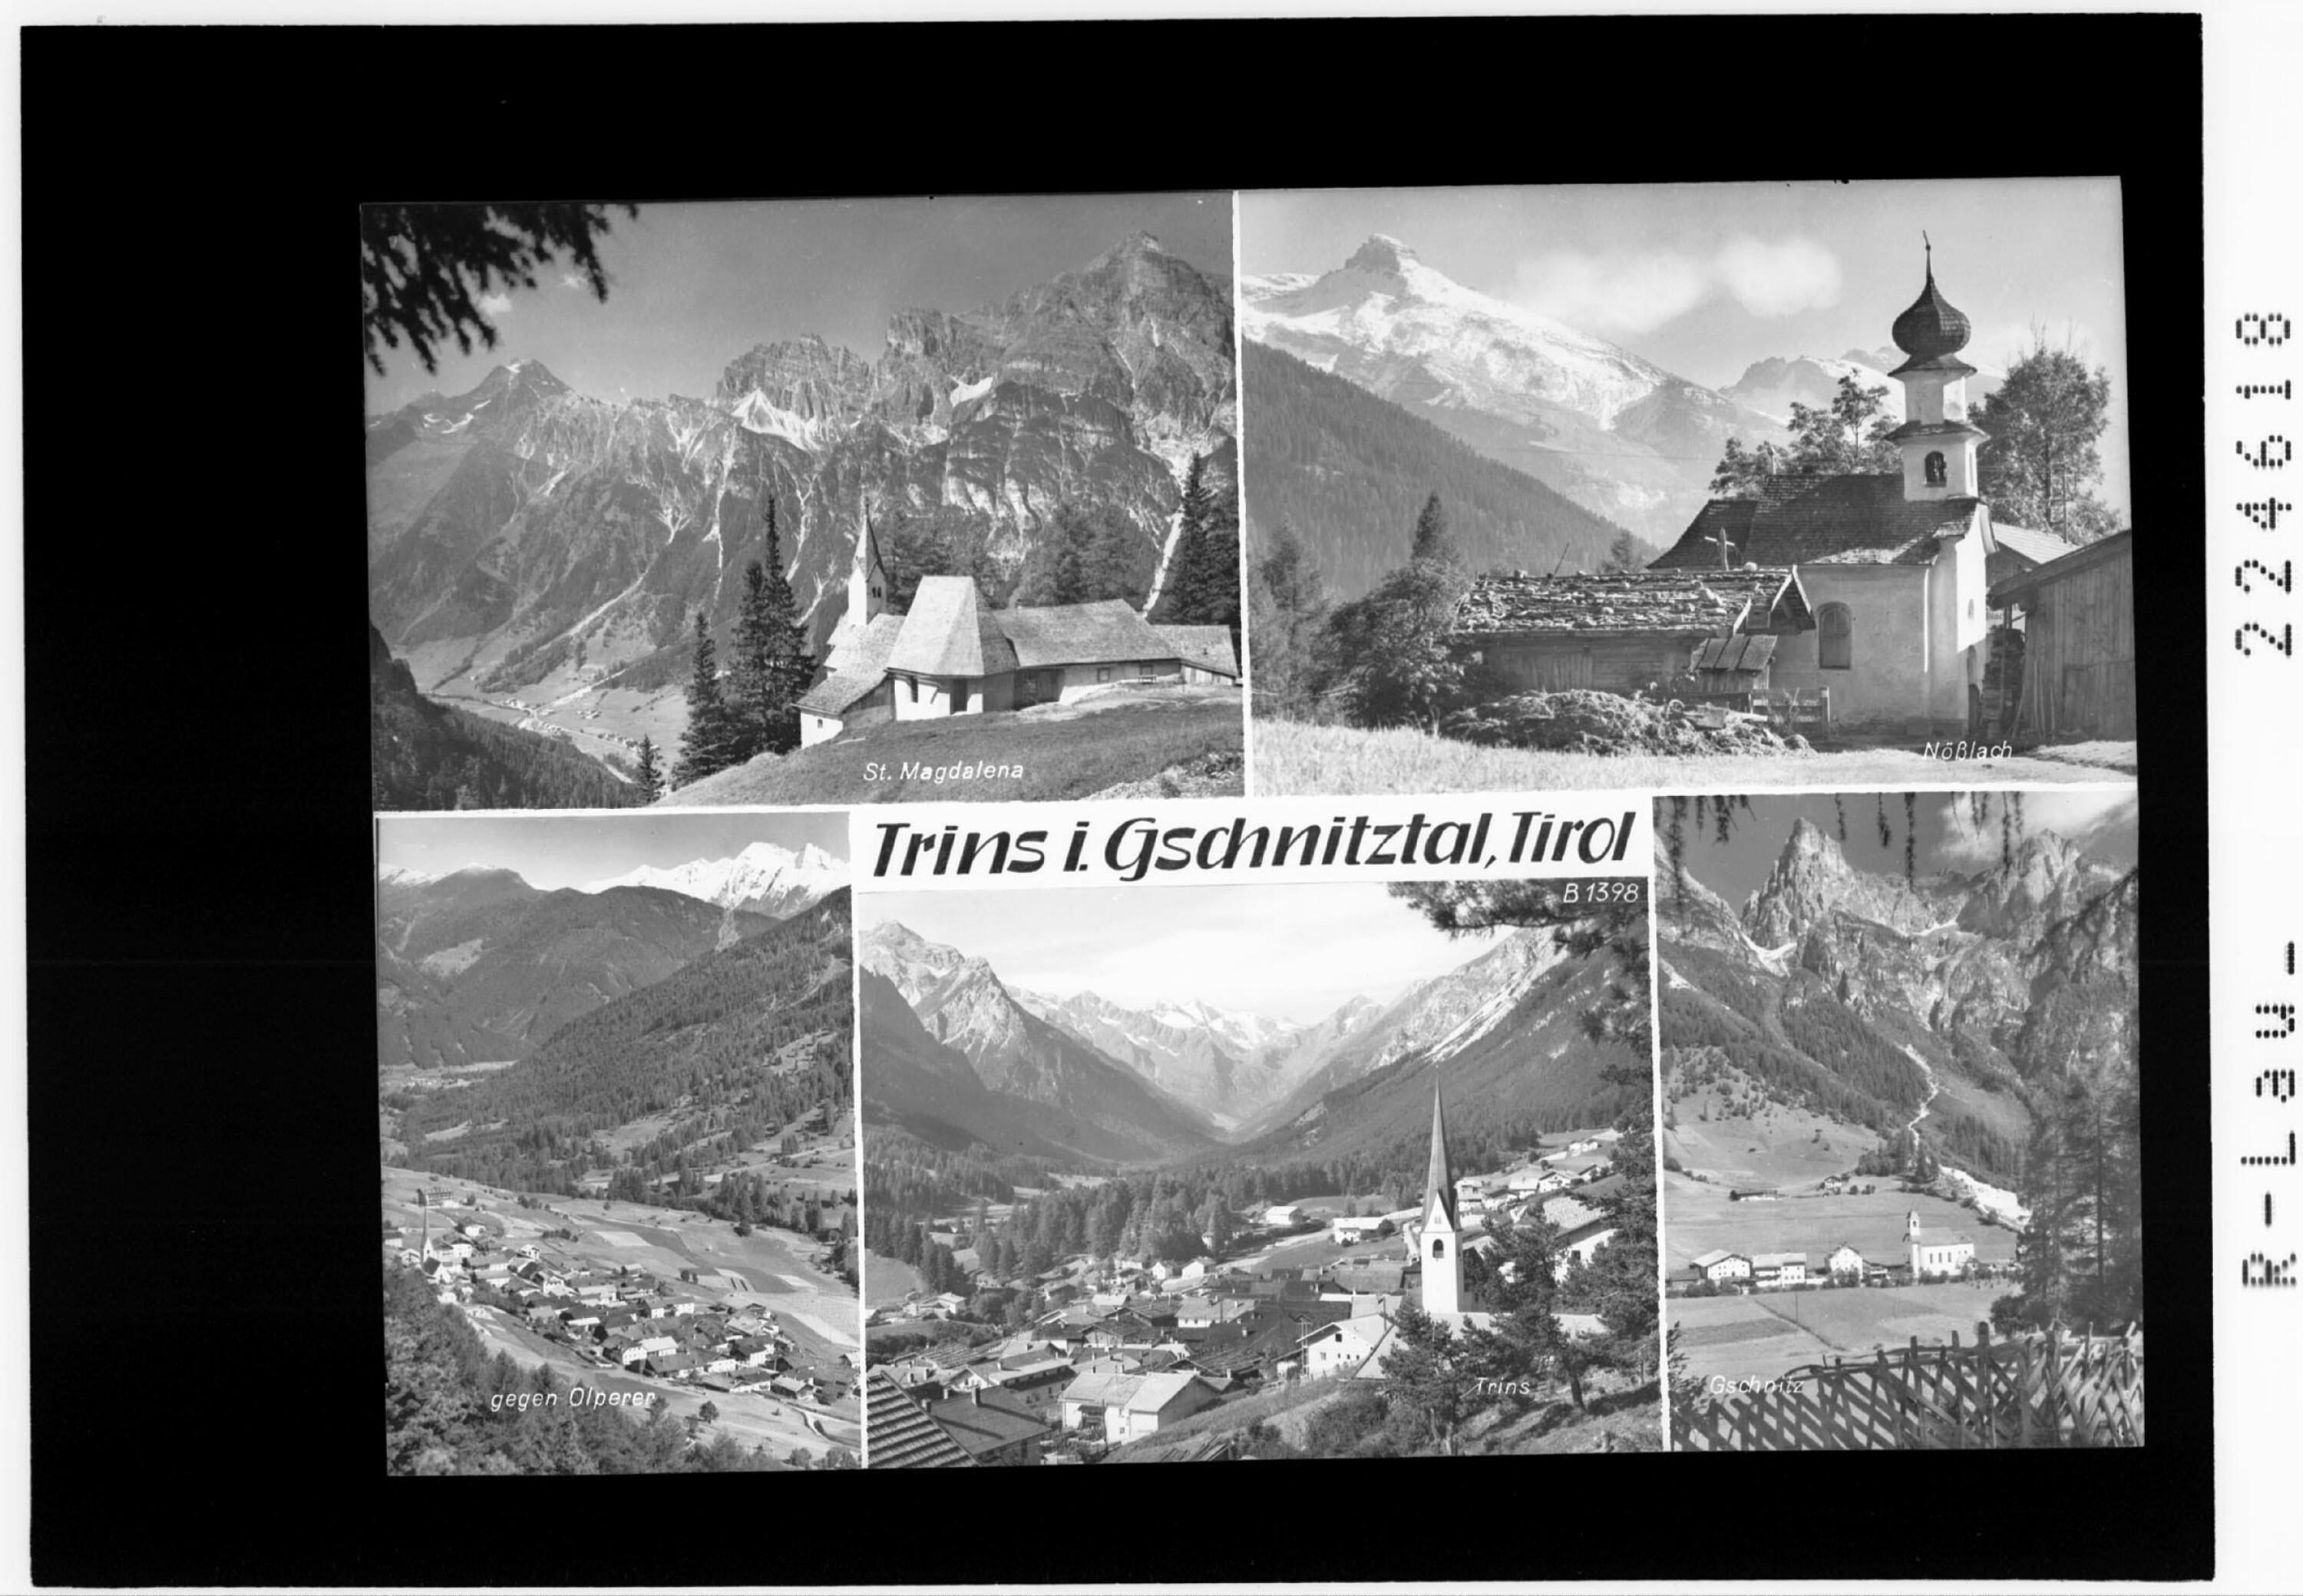 Trins im Gschnitztal / Tirol></div>


    <hr>
    <div class=